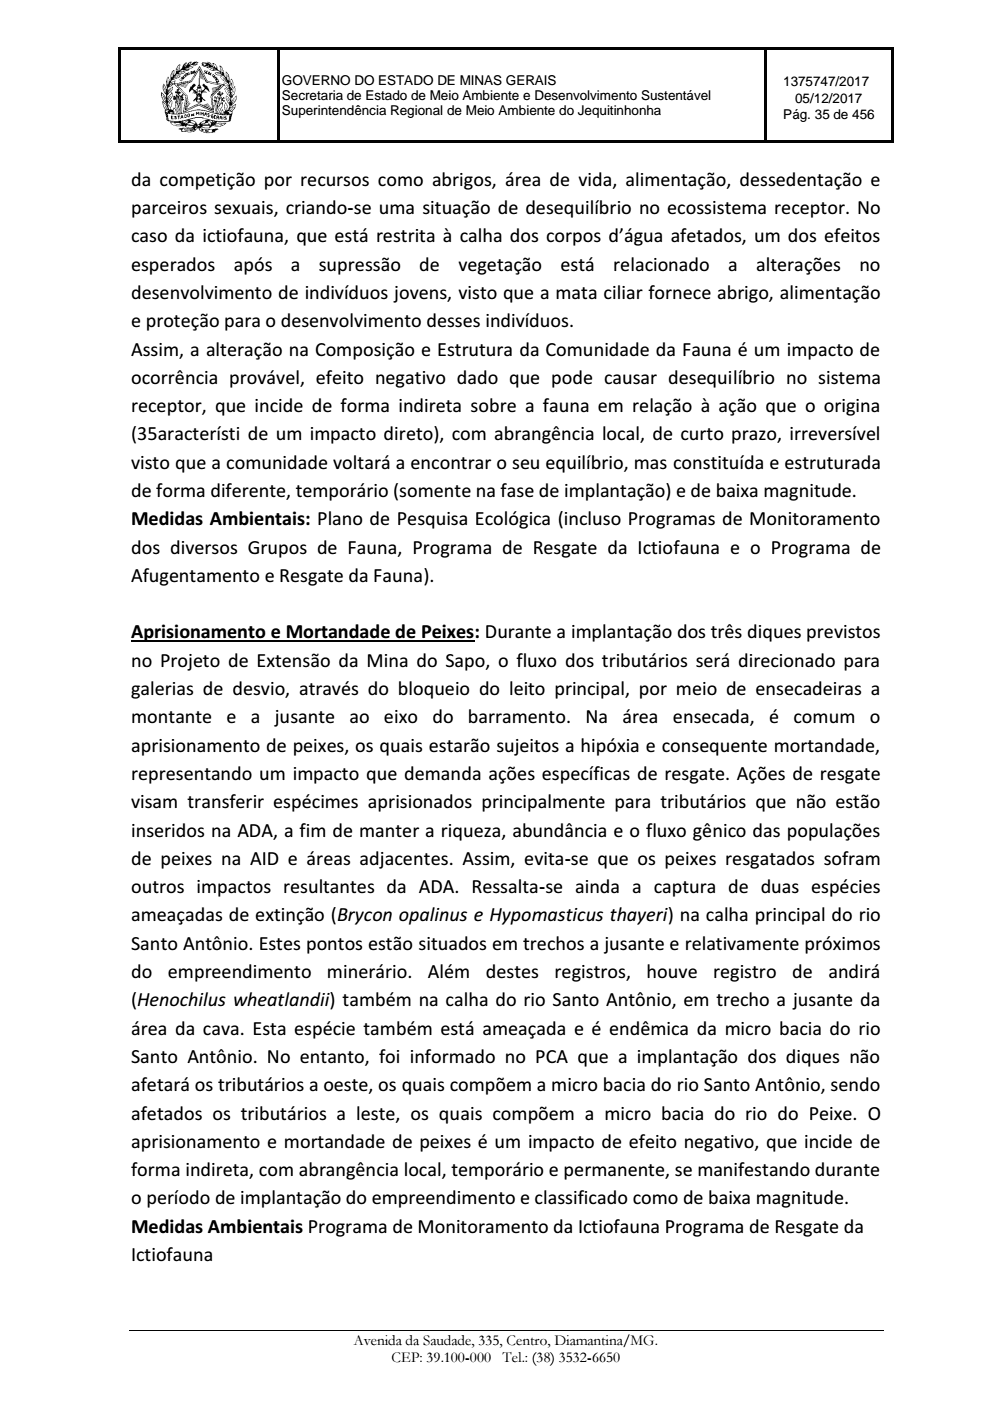 Page 35 from Parecer único da Secretaria de estado de Meio Ambiente e Desenvolvimento Sustentável (SEMAD)